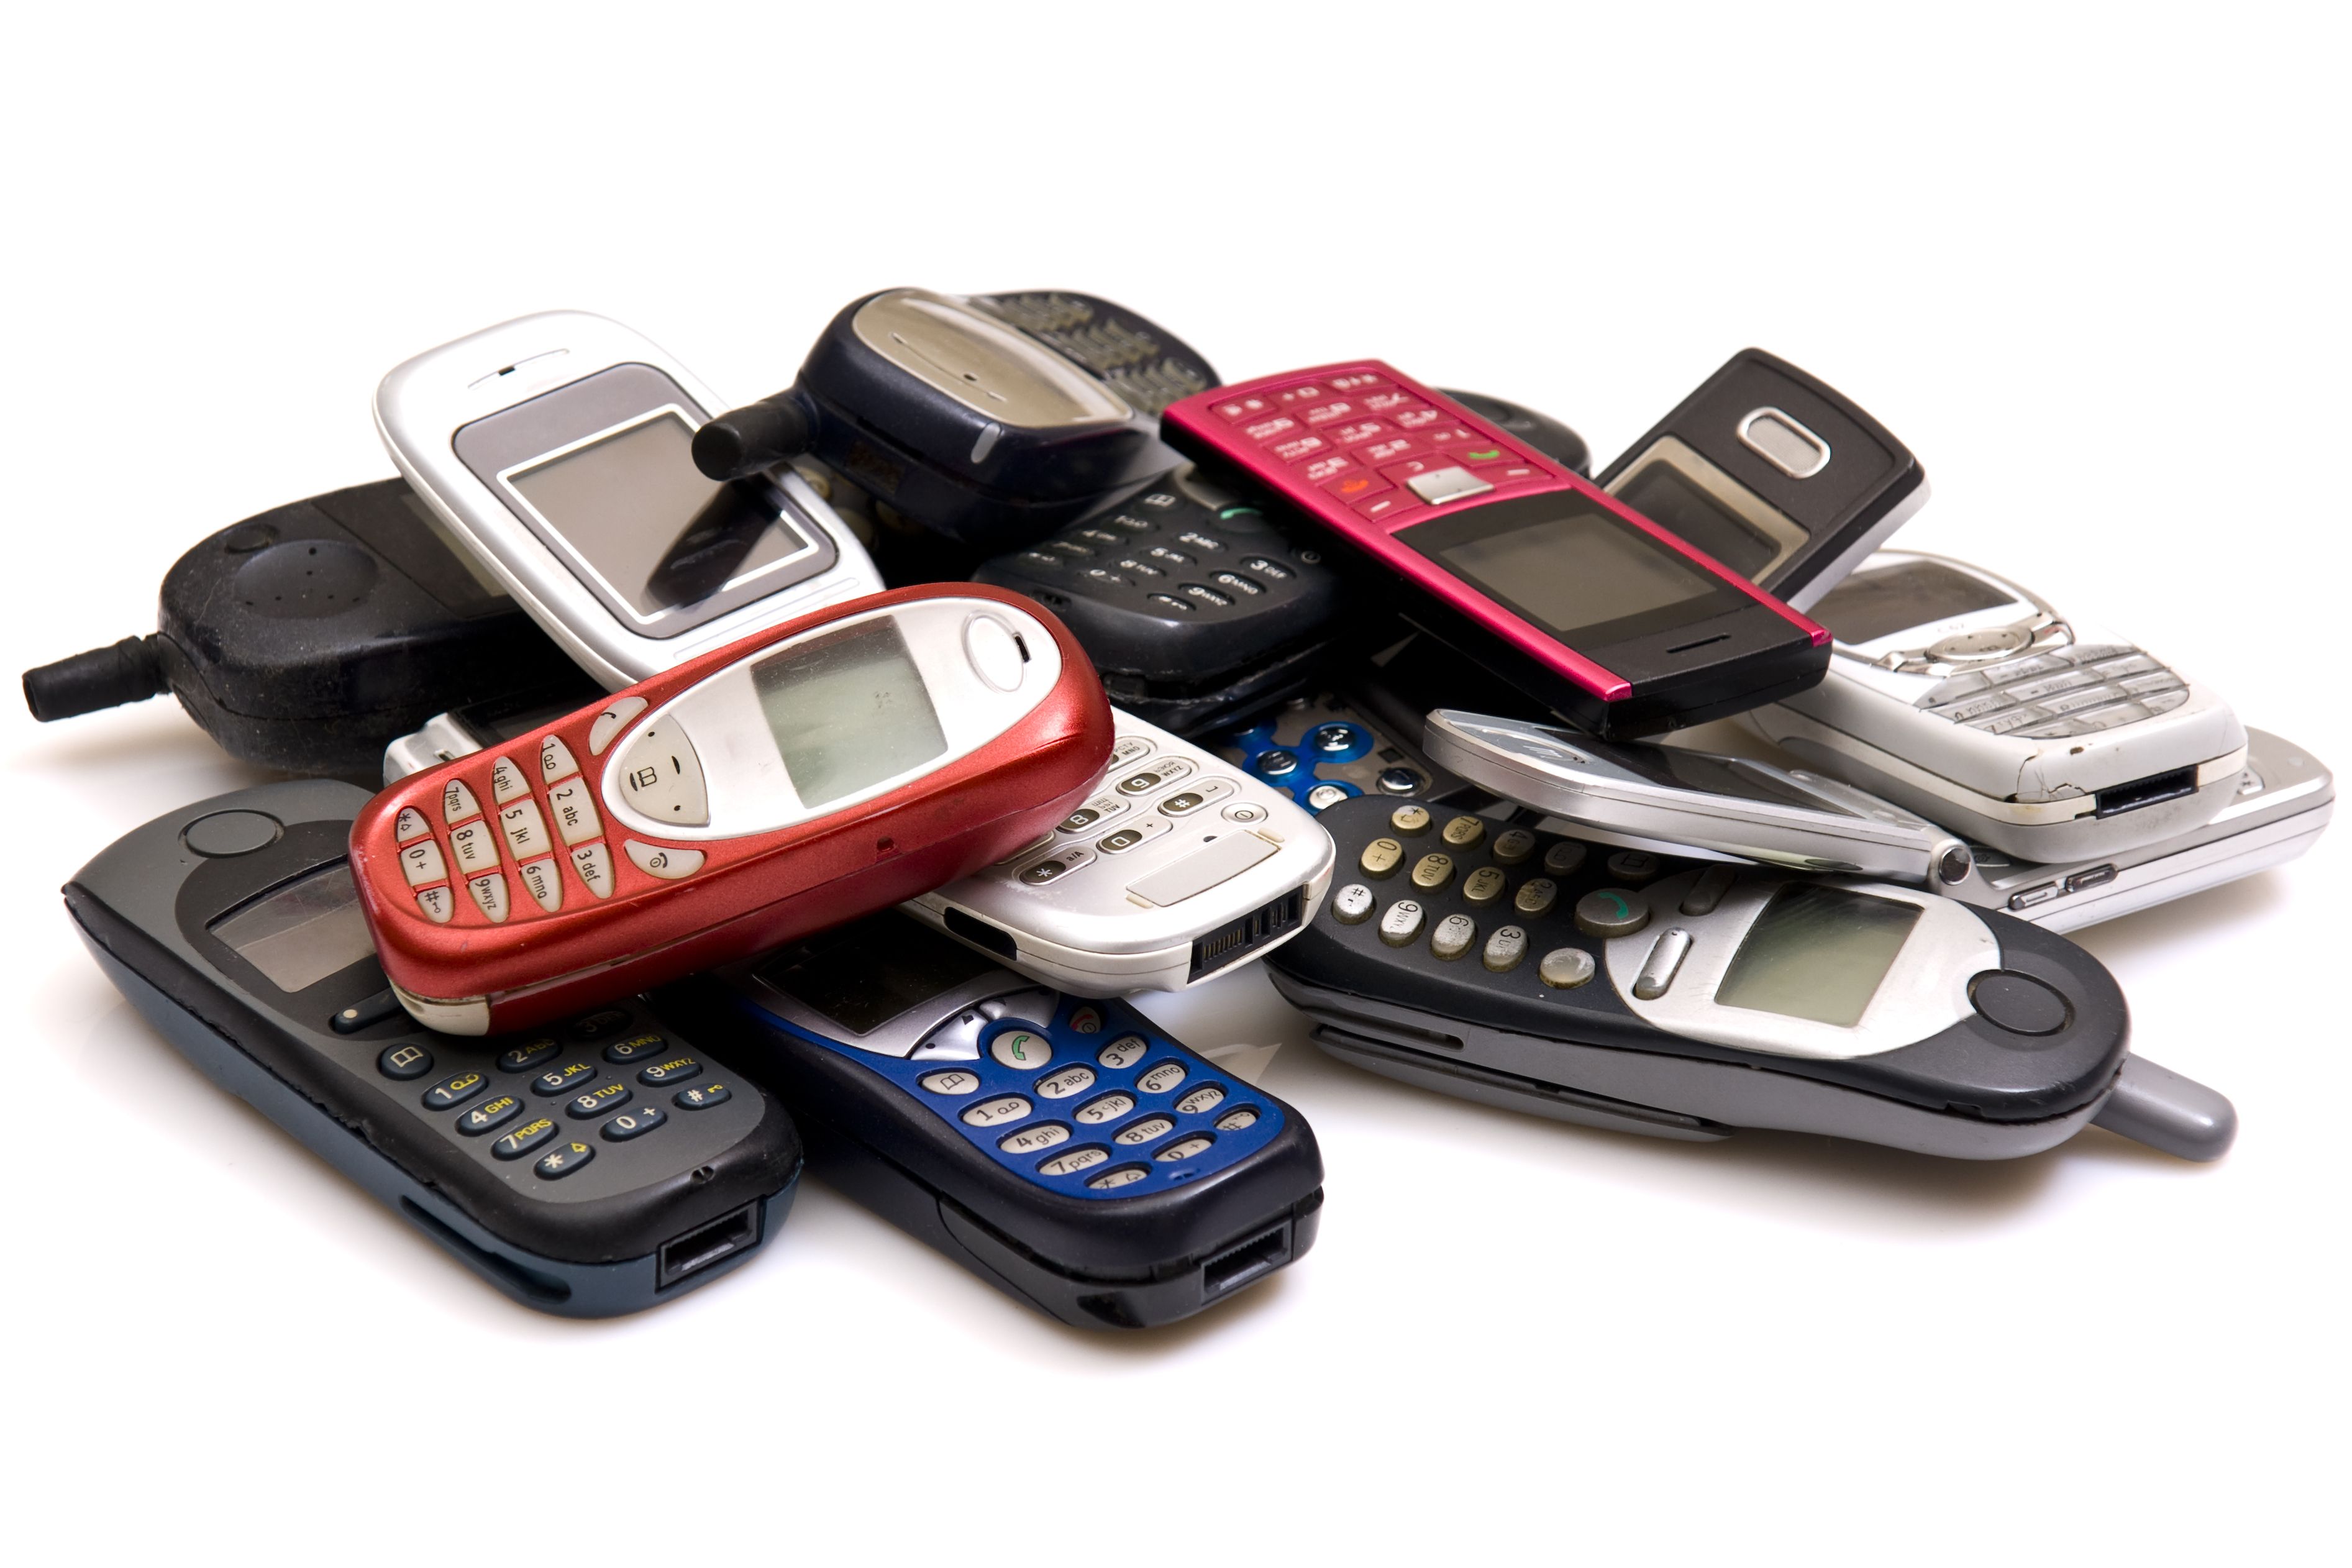 Reciclaje de productos tecnológicos: Cómo puedo reciclar mi teléfono móvil antiguo